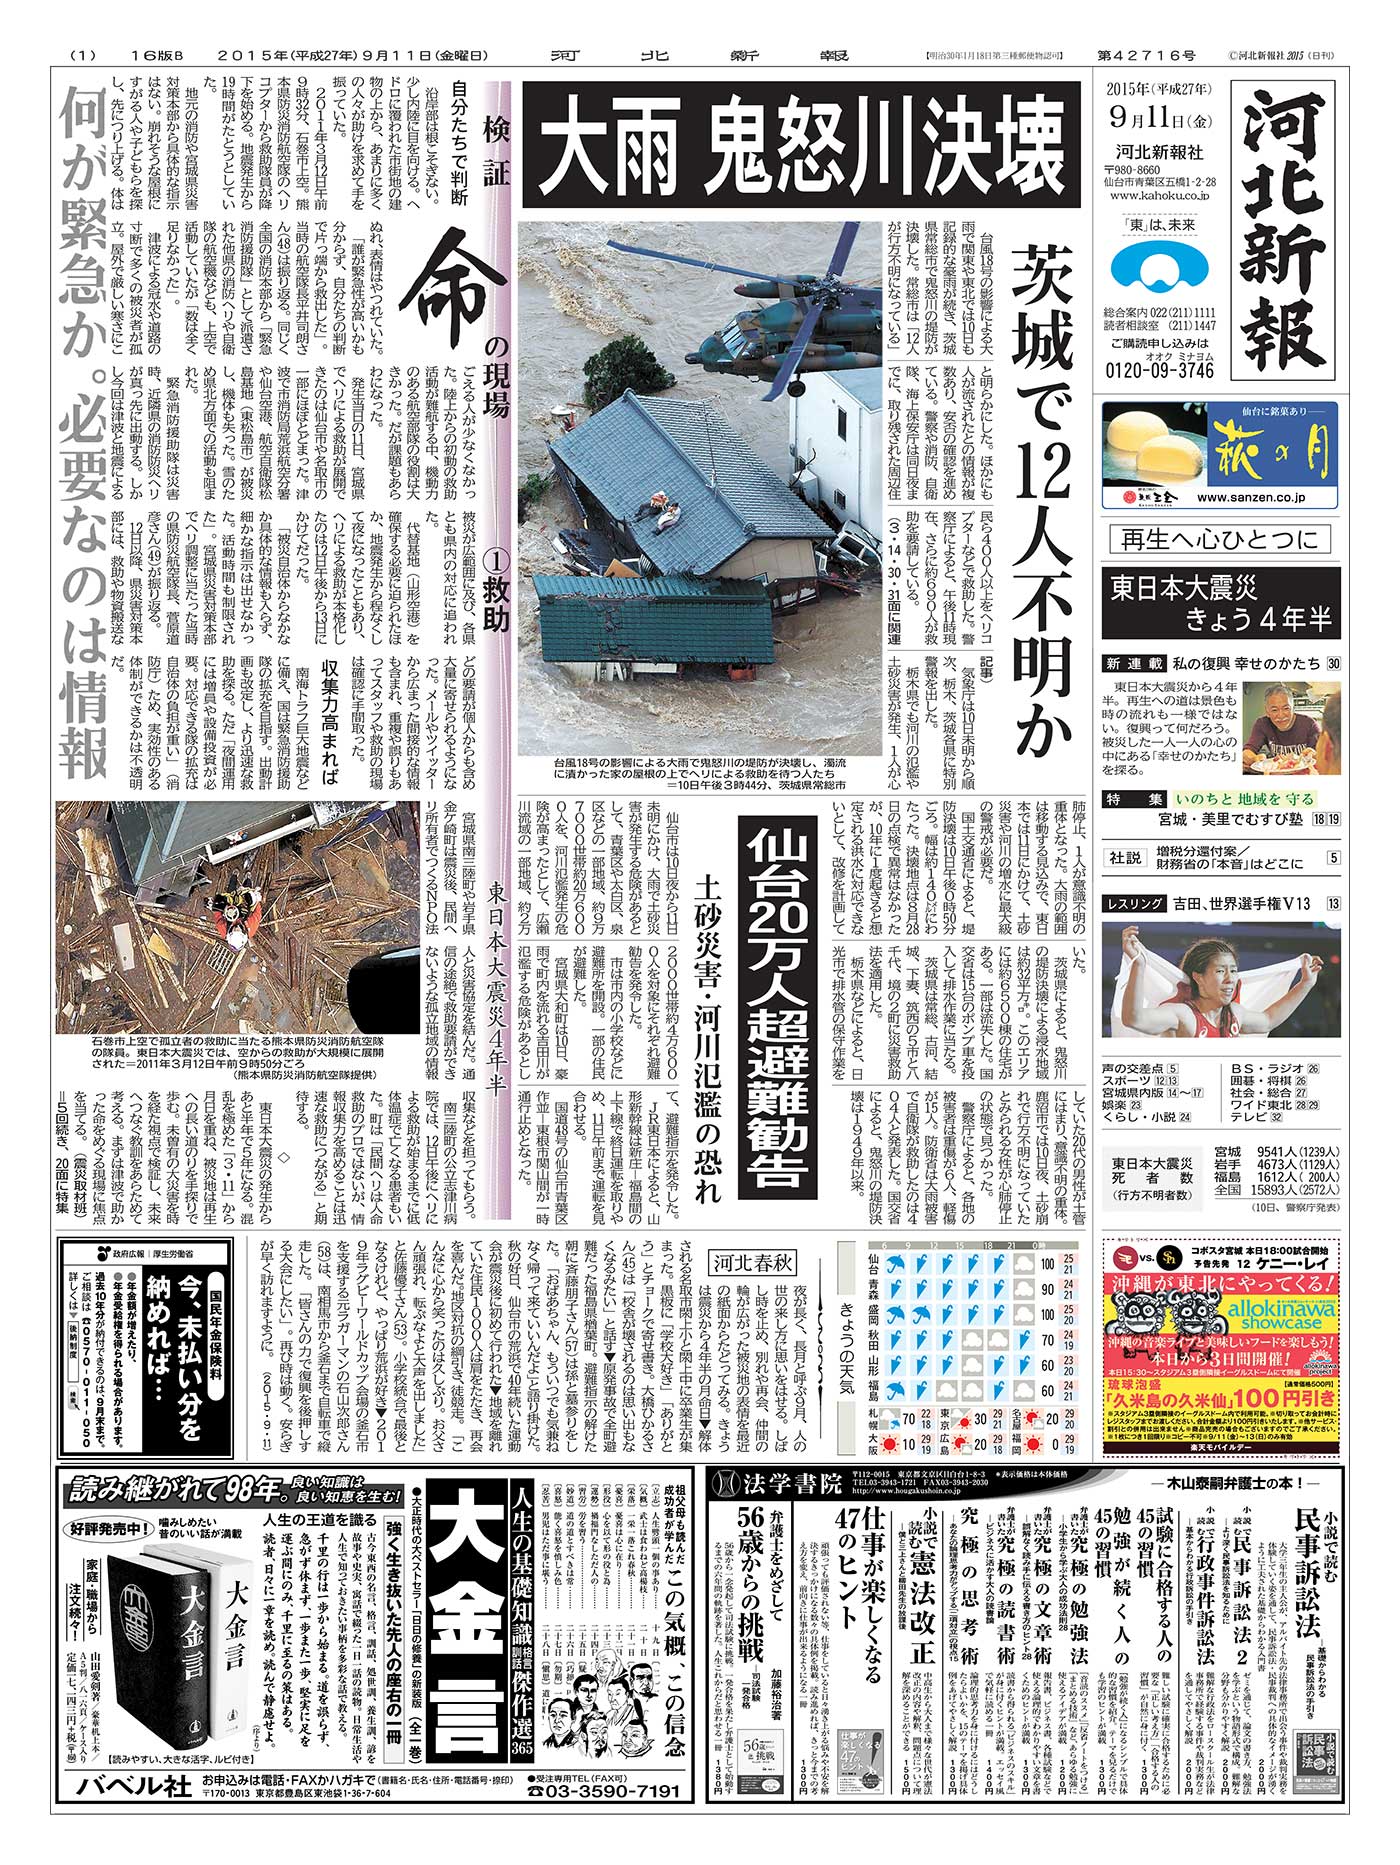 平成27年関東 東北豪雨 鬼怒川決壊 15年9月10日 災害カレンダー Yahoo 天気 災害